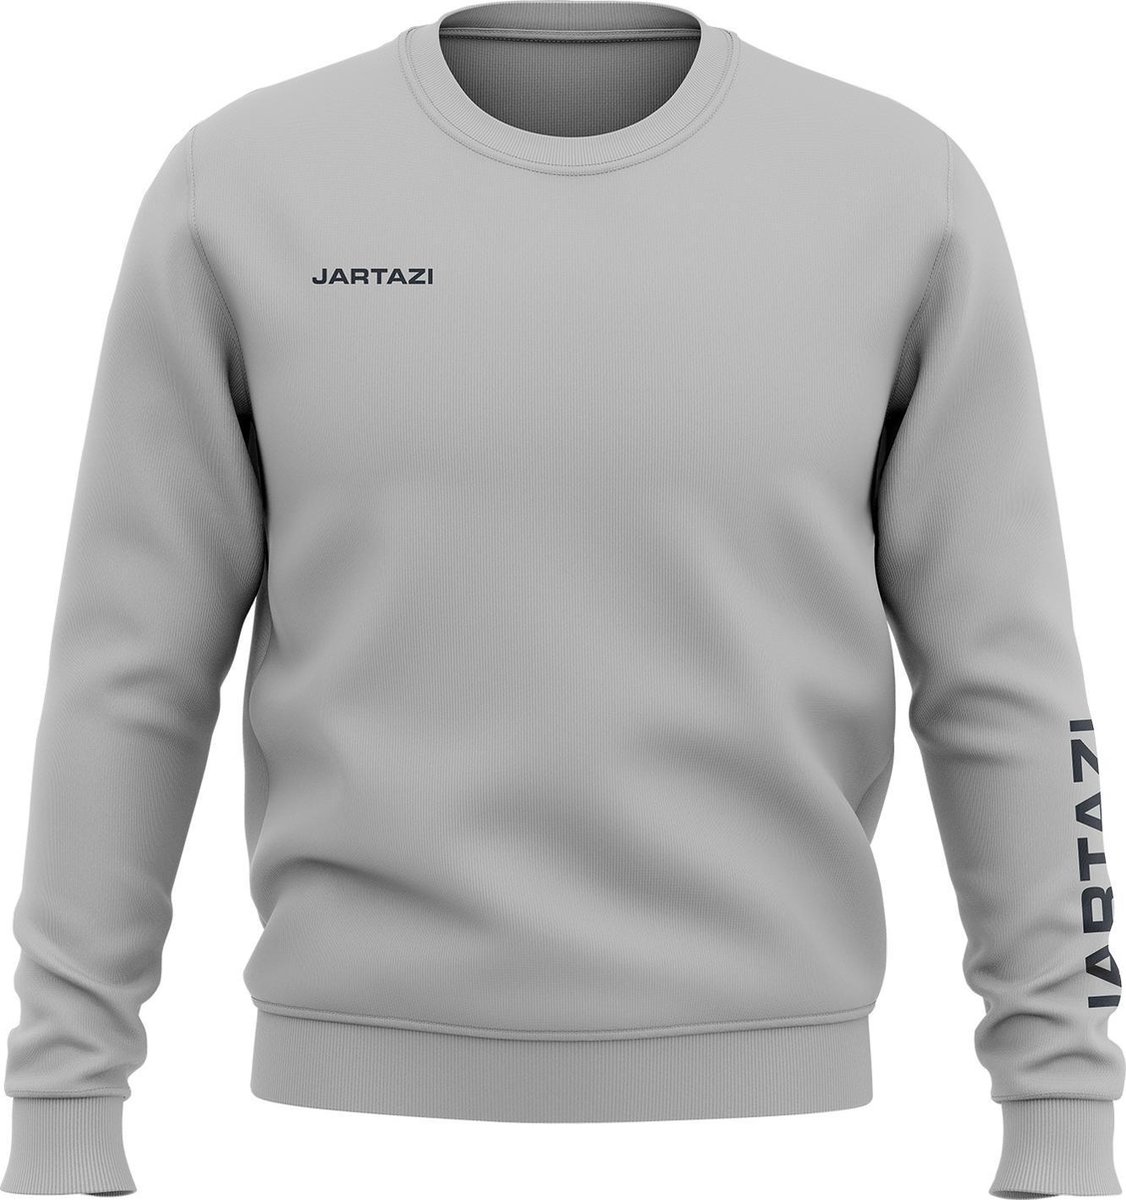 Jartazi Sweater Premium Crewneck Katoen/polyester Grijs Maat S